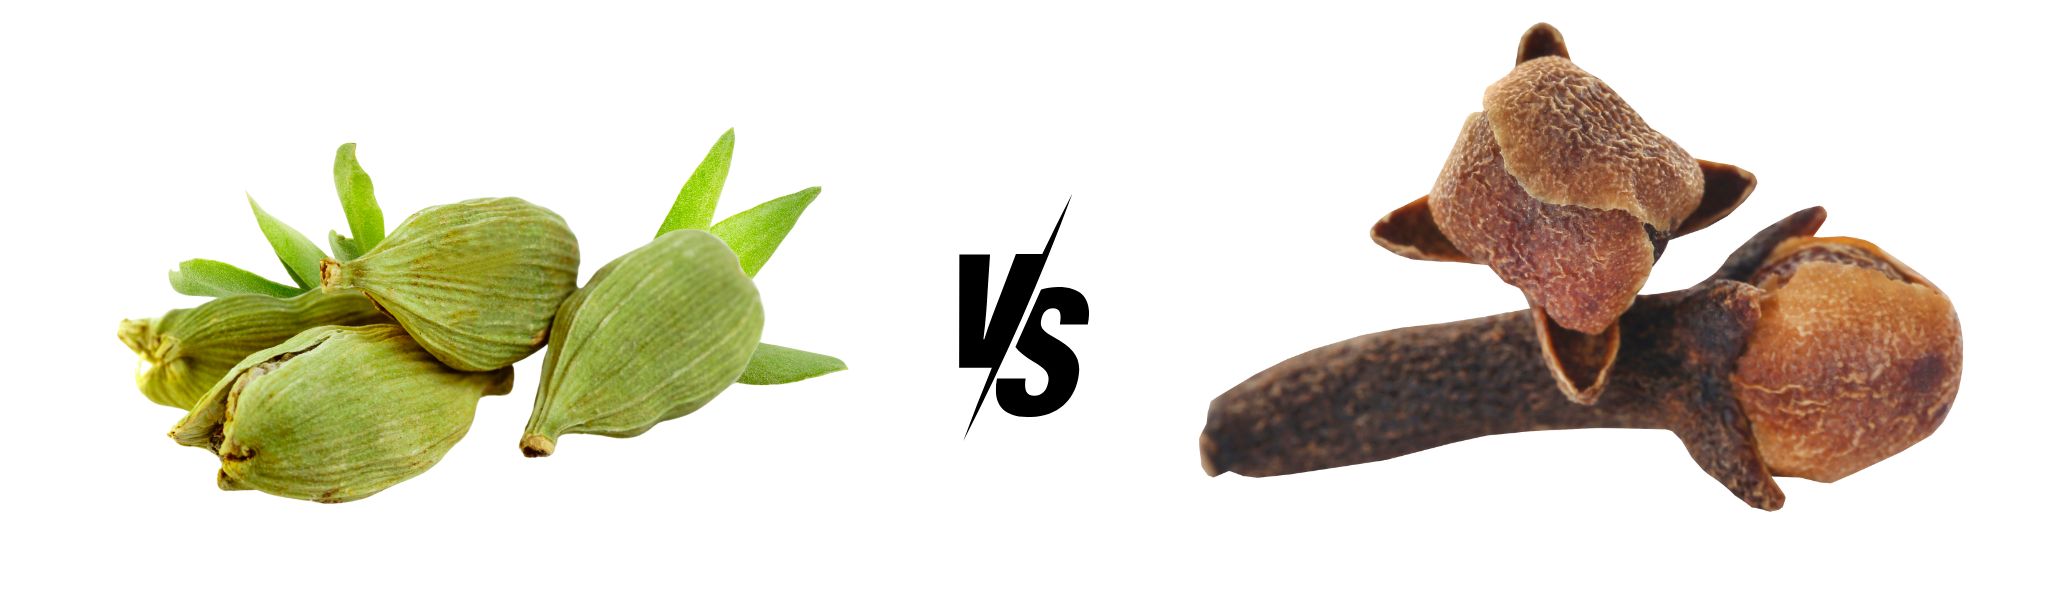 Cardamom vs. Clove